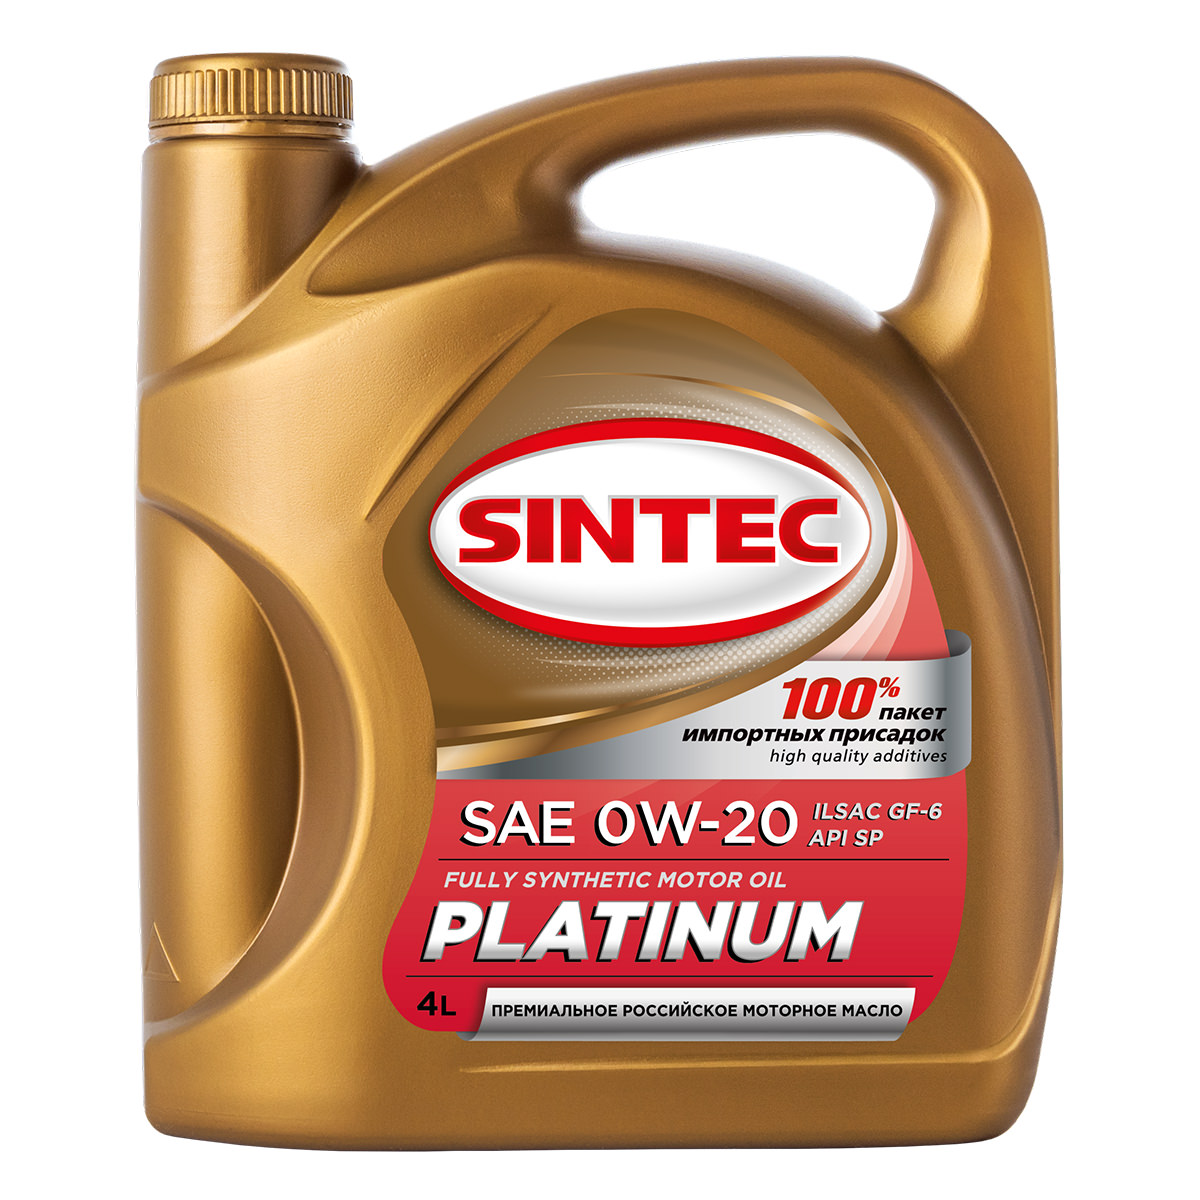 фото Моторное масло SINTEC PLATINUM SAE 0W-20 ILSAC GF-6 API SP 4л 